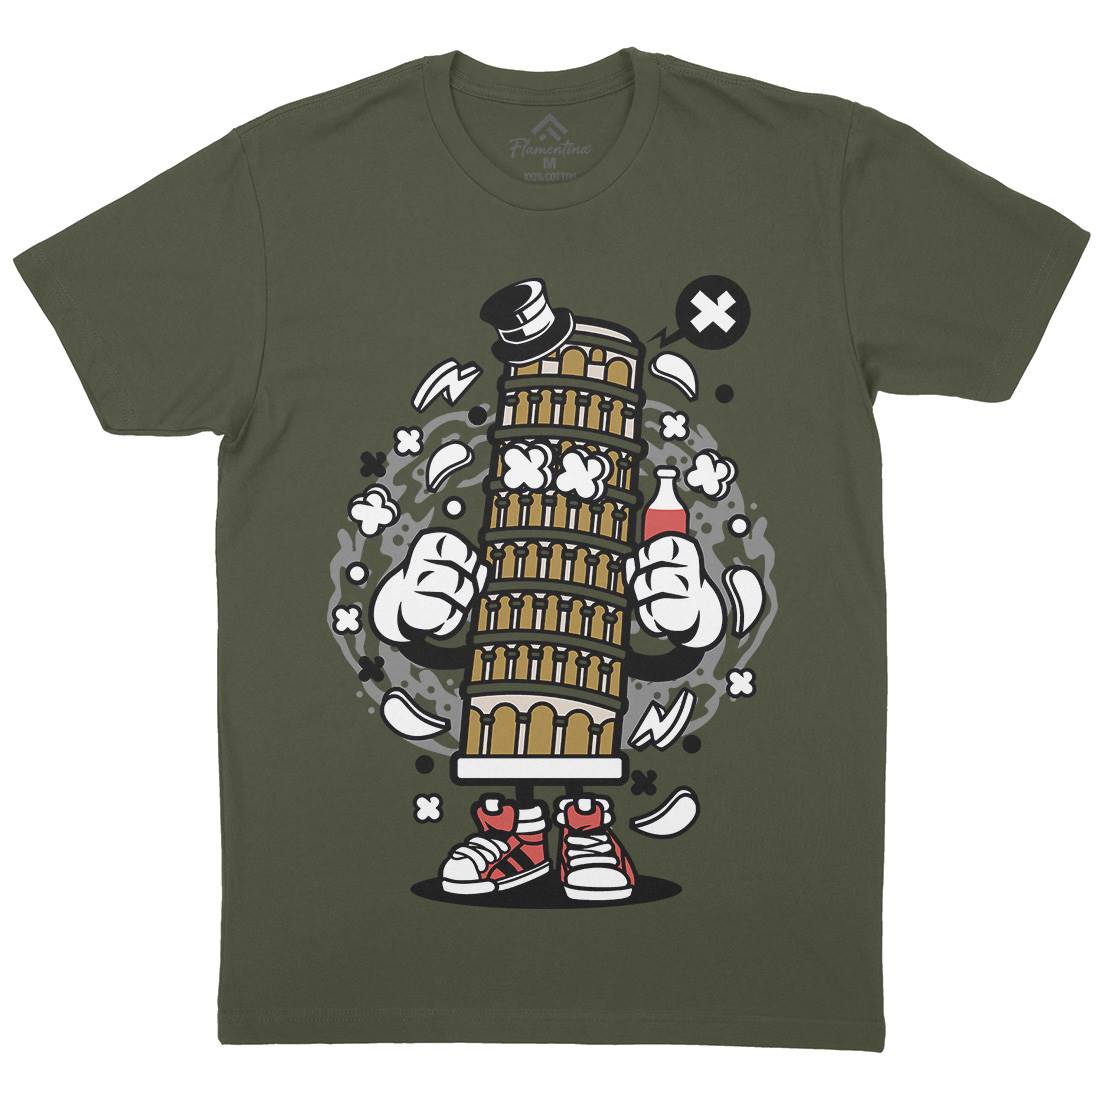 Pisa Tower Mens Crew Neck T-Shirt Retro C192